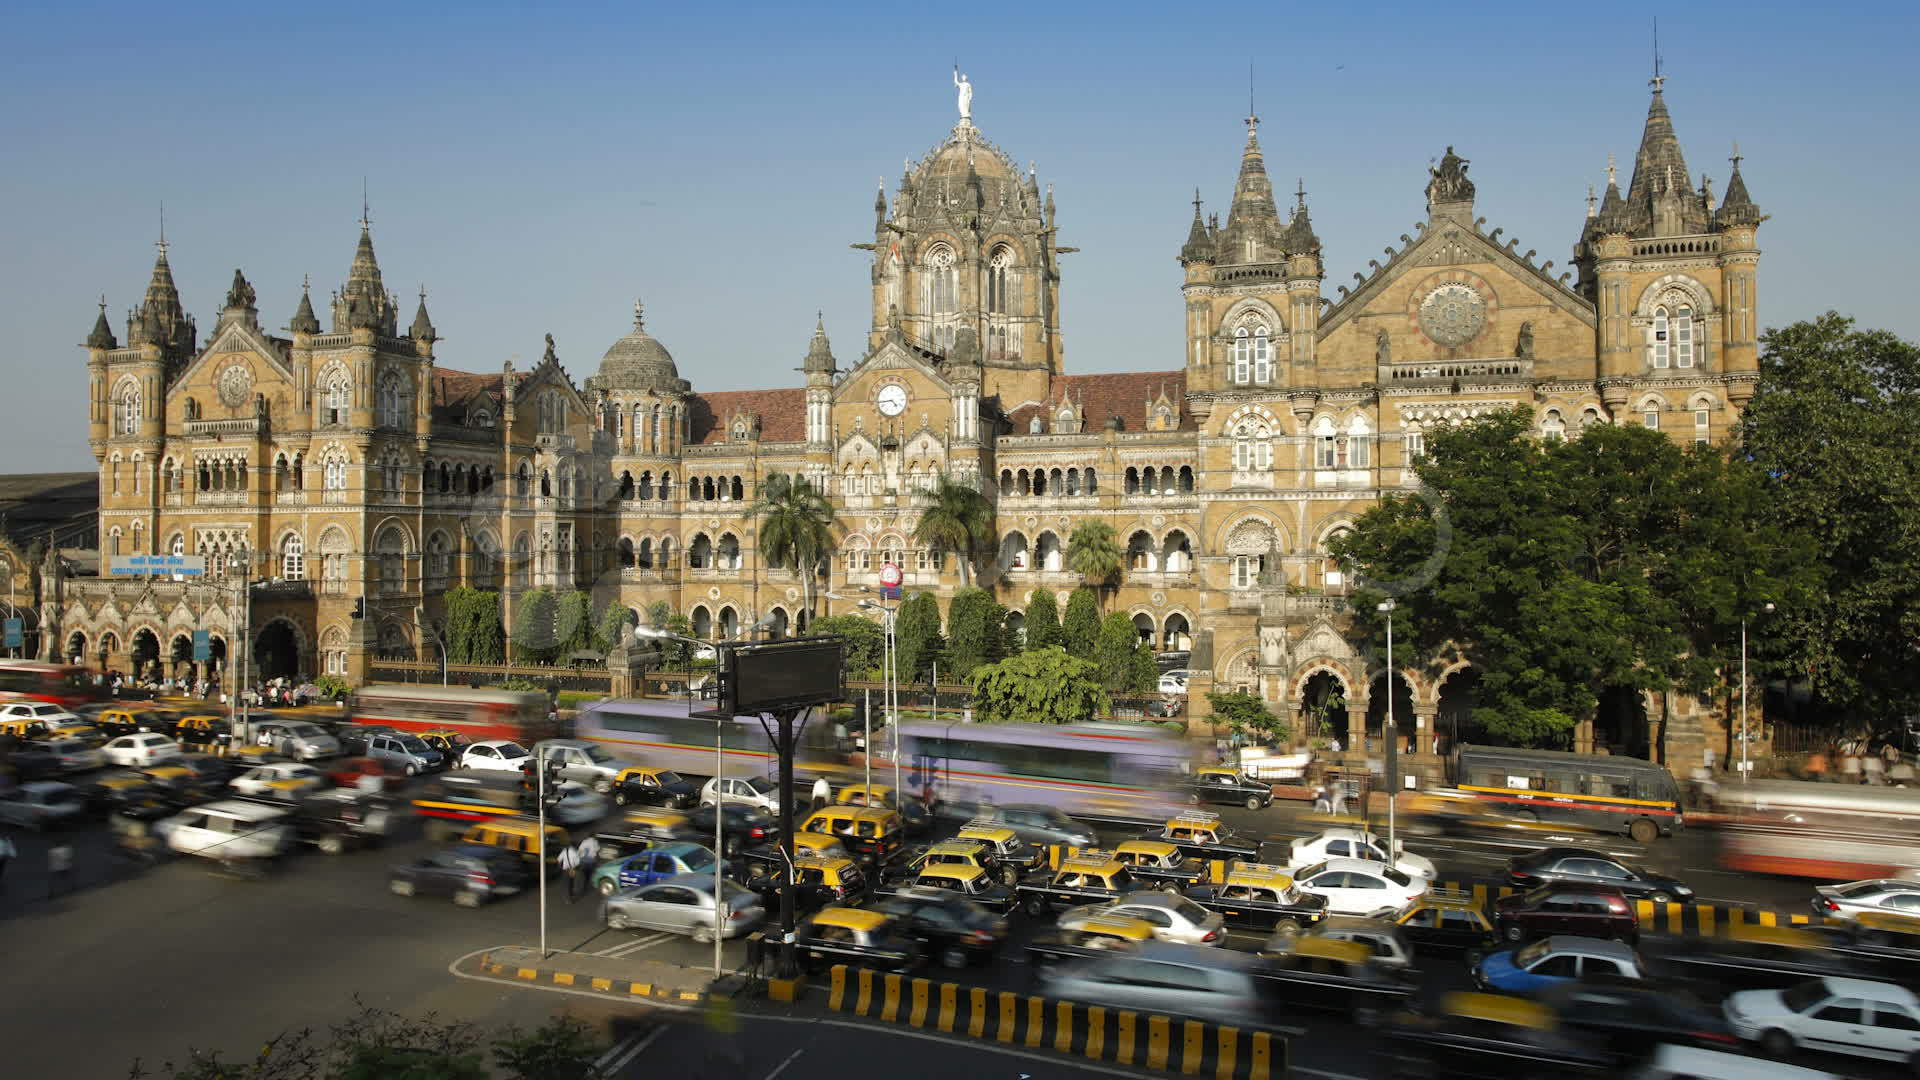 Shivaji Palace in Mumbai wallpapers and image